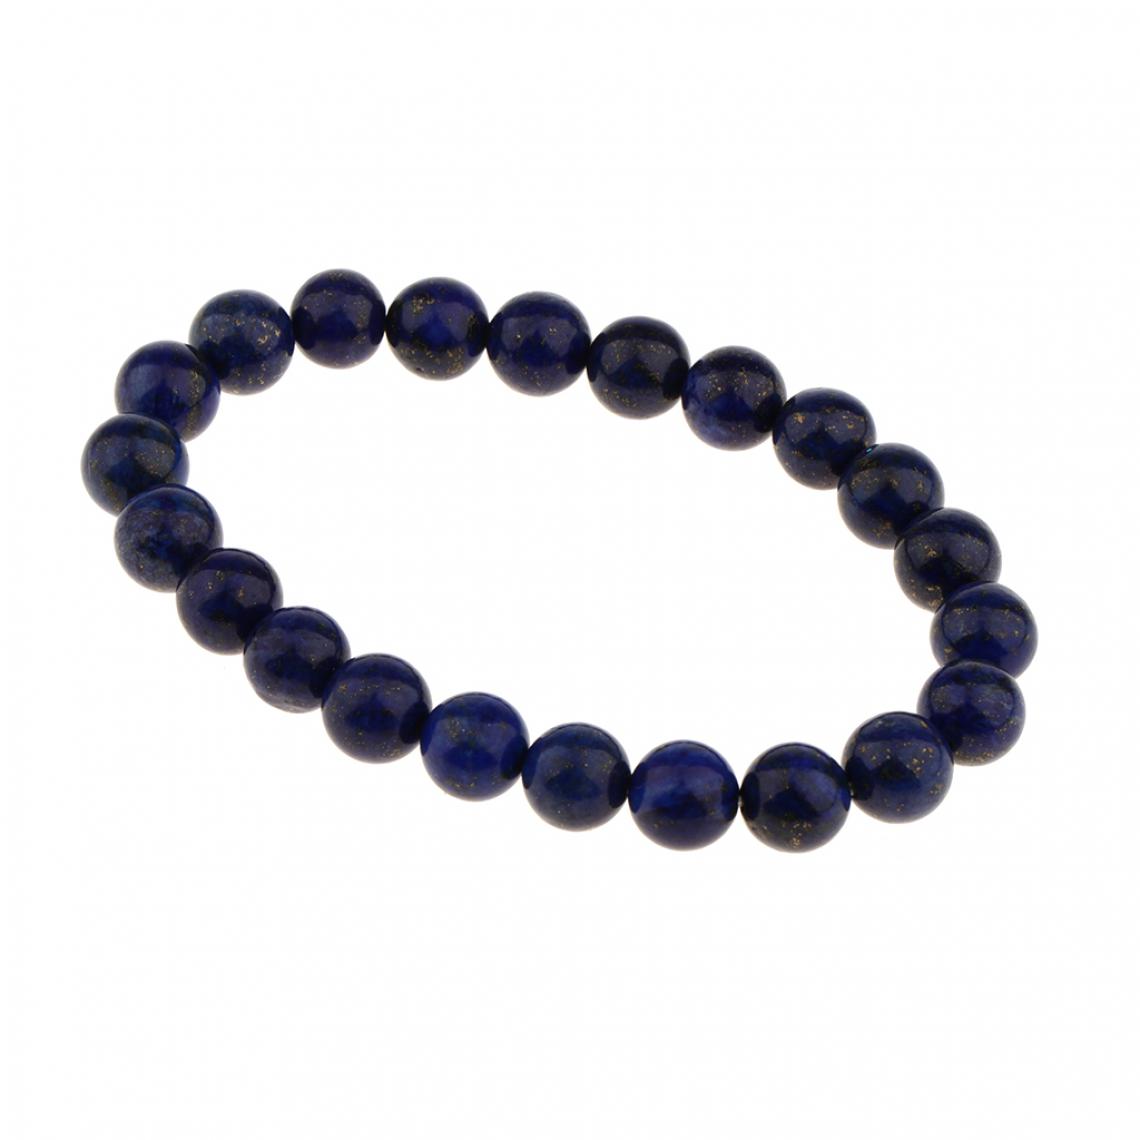 marque generique - Bracelet Perles Lasurite Lapis-lazuli Bleu Foncé Naturel Fait Main - Bracelet connecté